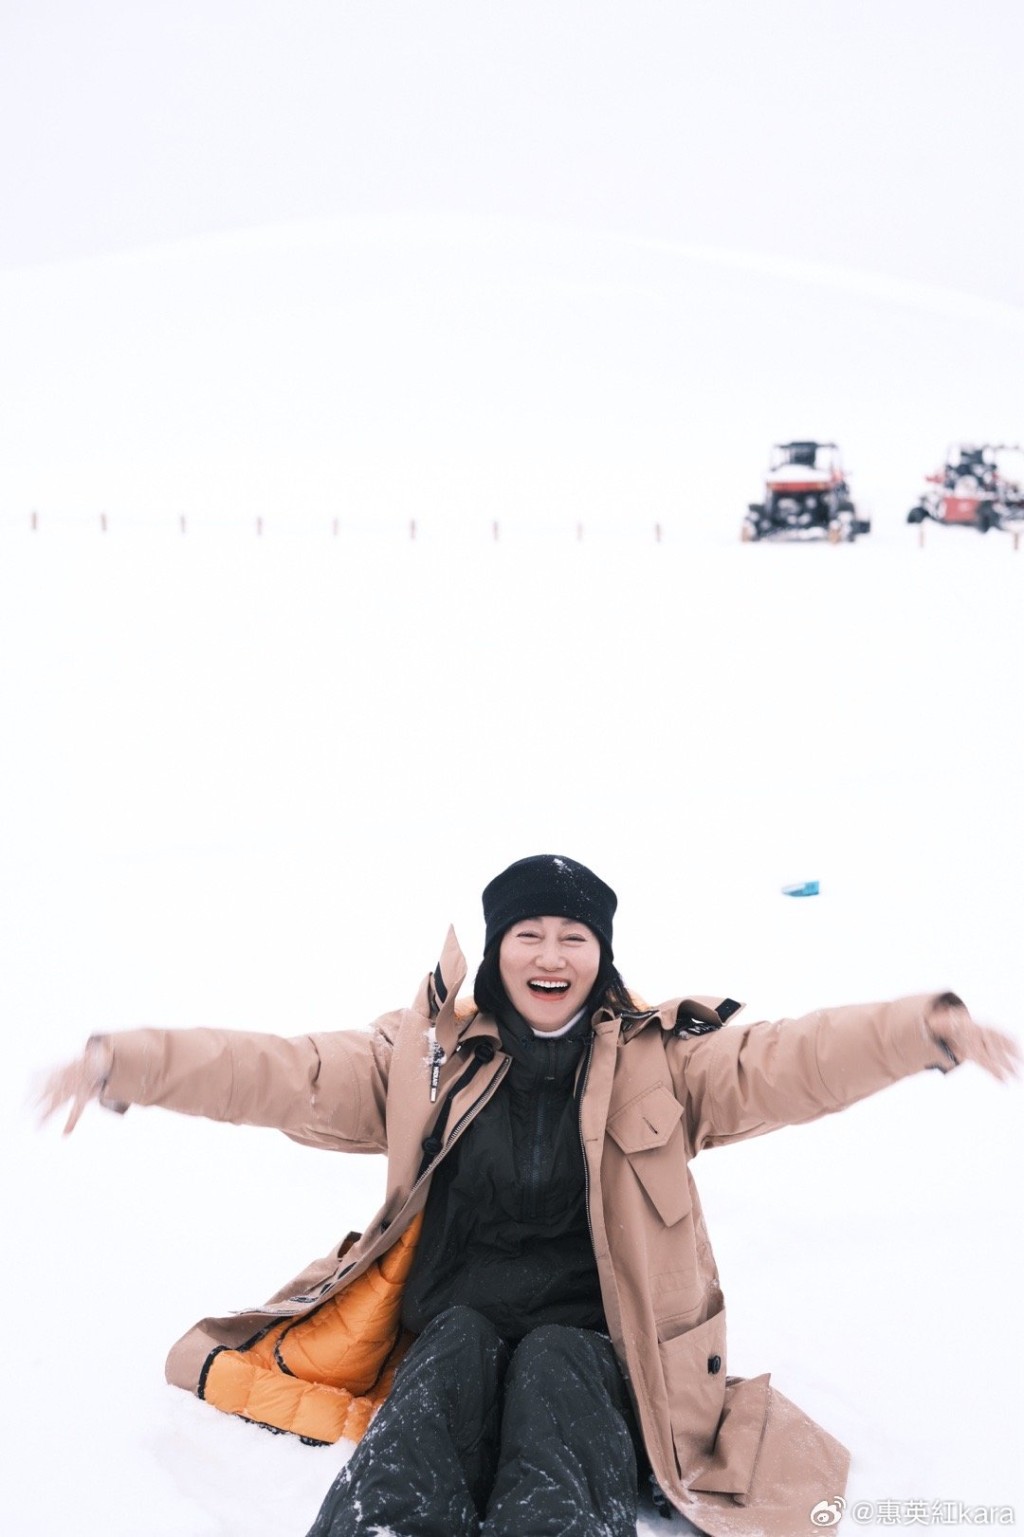 惠英红似乎很喜欢玩雪。